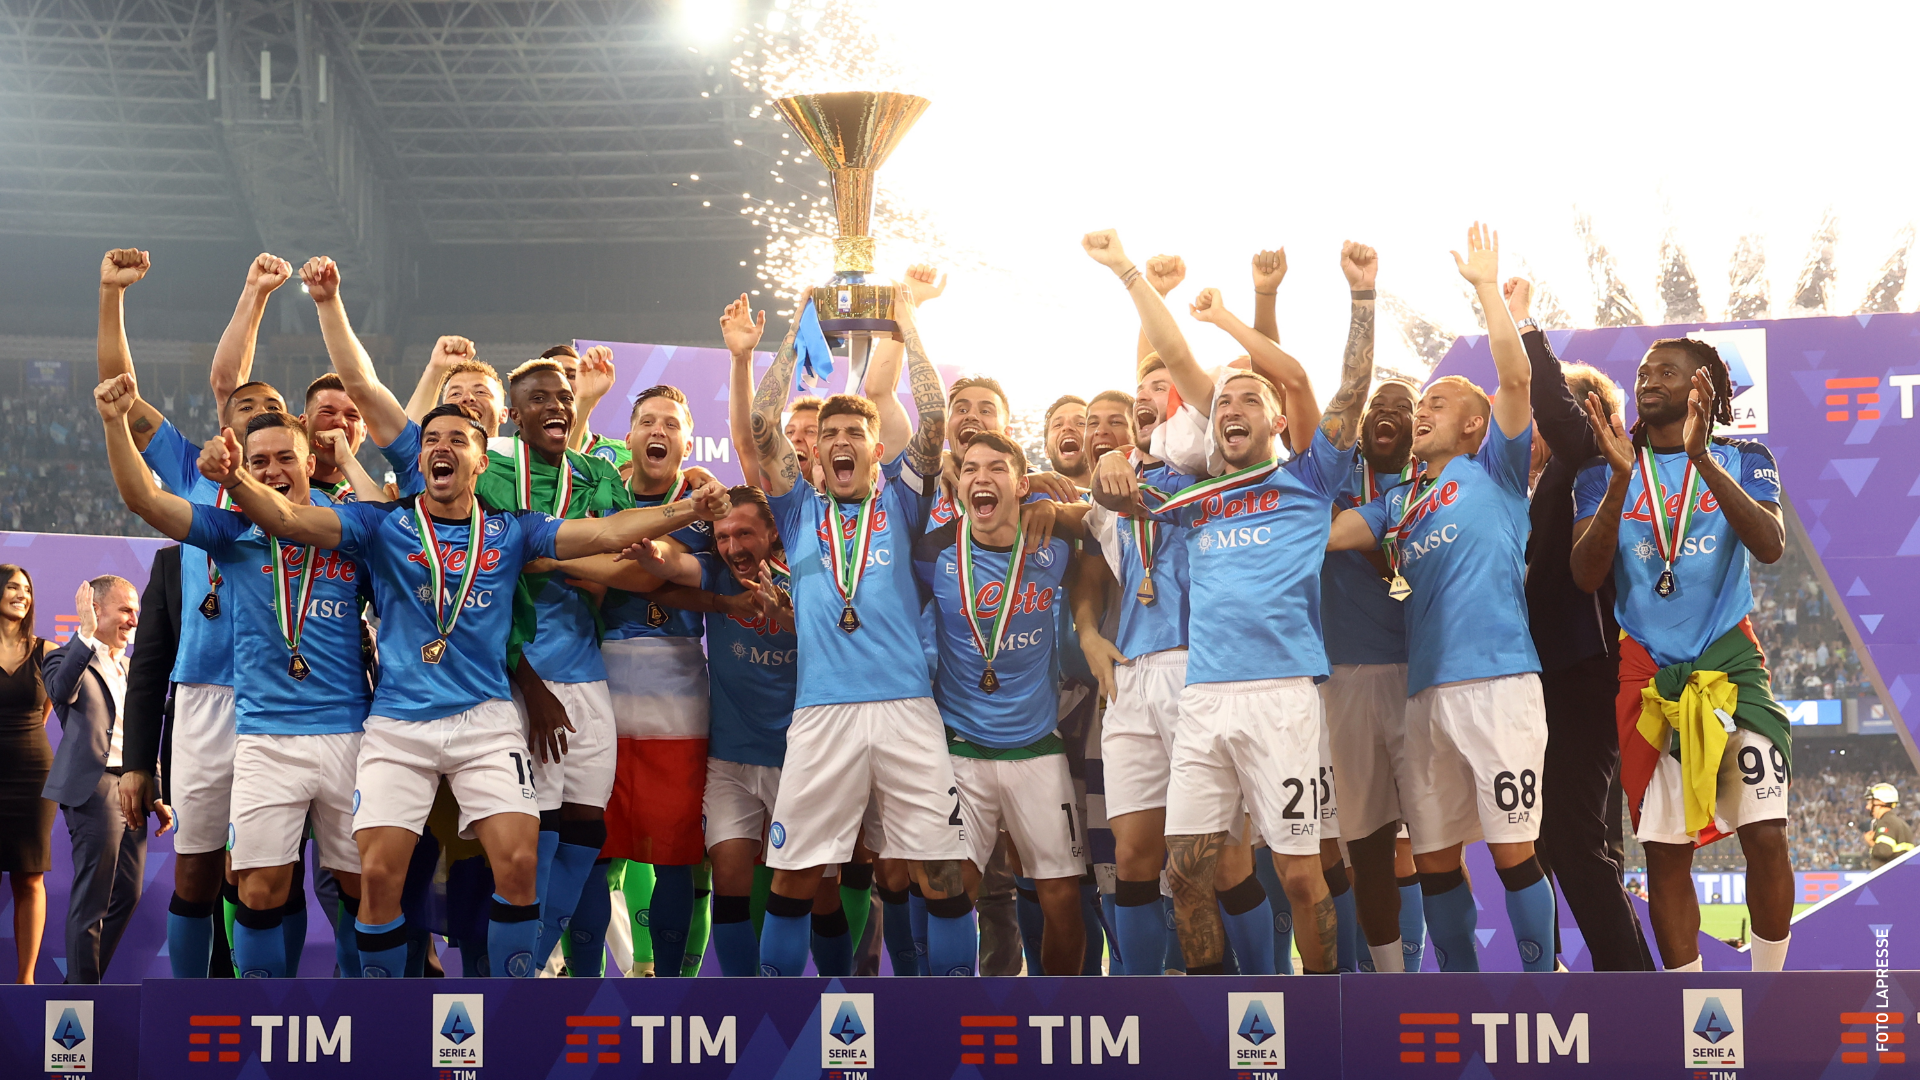 FOTO/ Napoli tricolore, utile record: è il più alto della storia in Italia e in top 10 in Europa